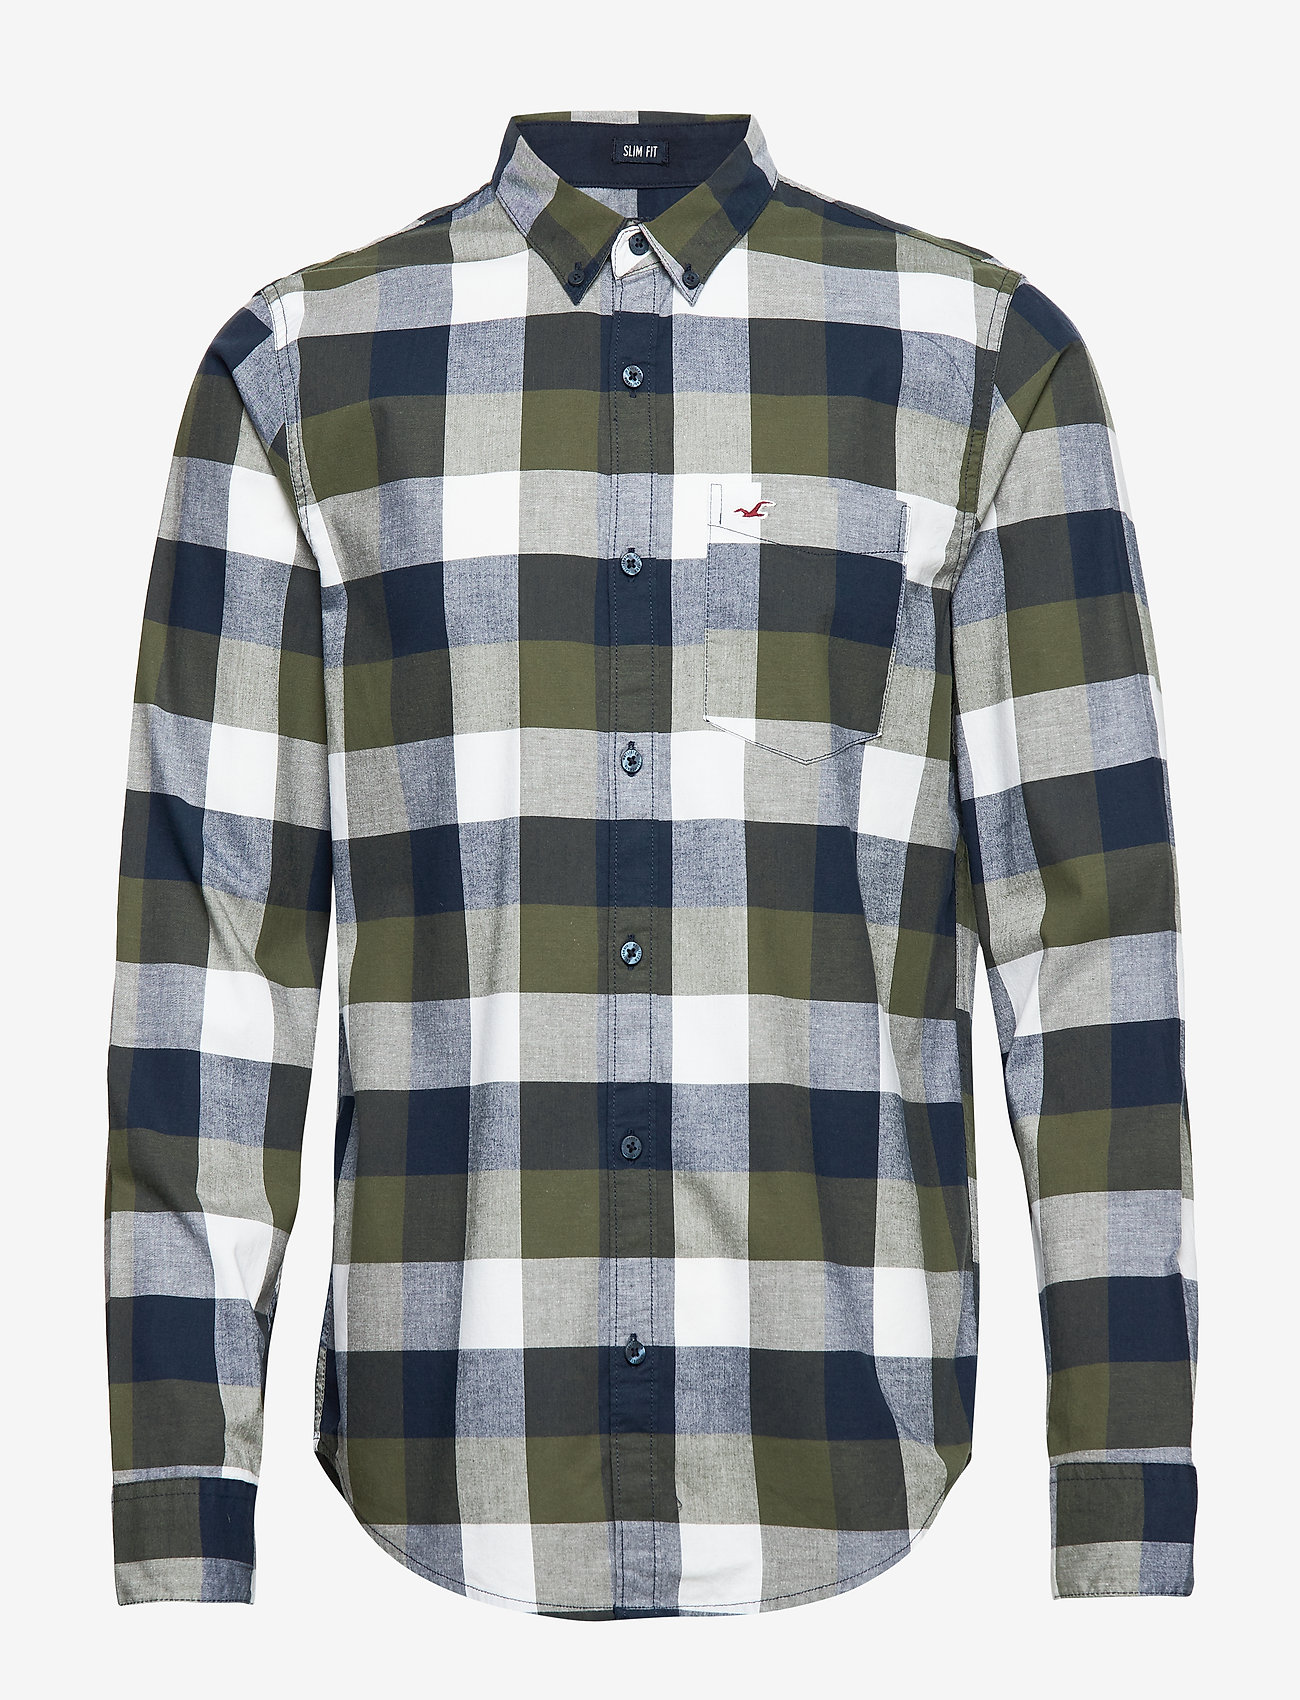 hollister checkered shirt